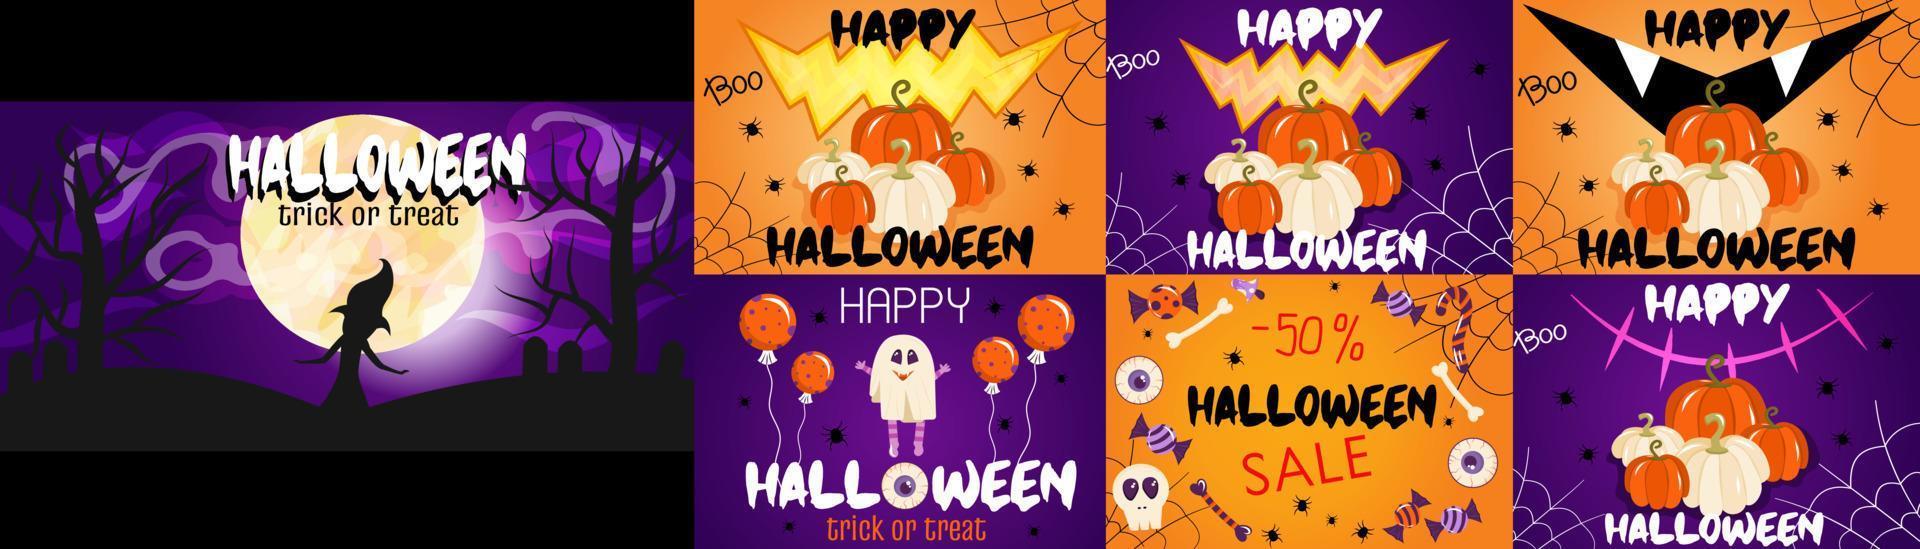 een set banners voor halloween met de maan, pompoenen, spinnen. banners voor uitnodigingen, decor met snoep, spinnenwebben. paarse en oranje halloween-achtergronden. vectorillustratie in cartoon-stijl vector